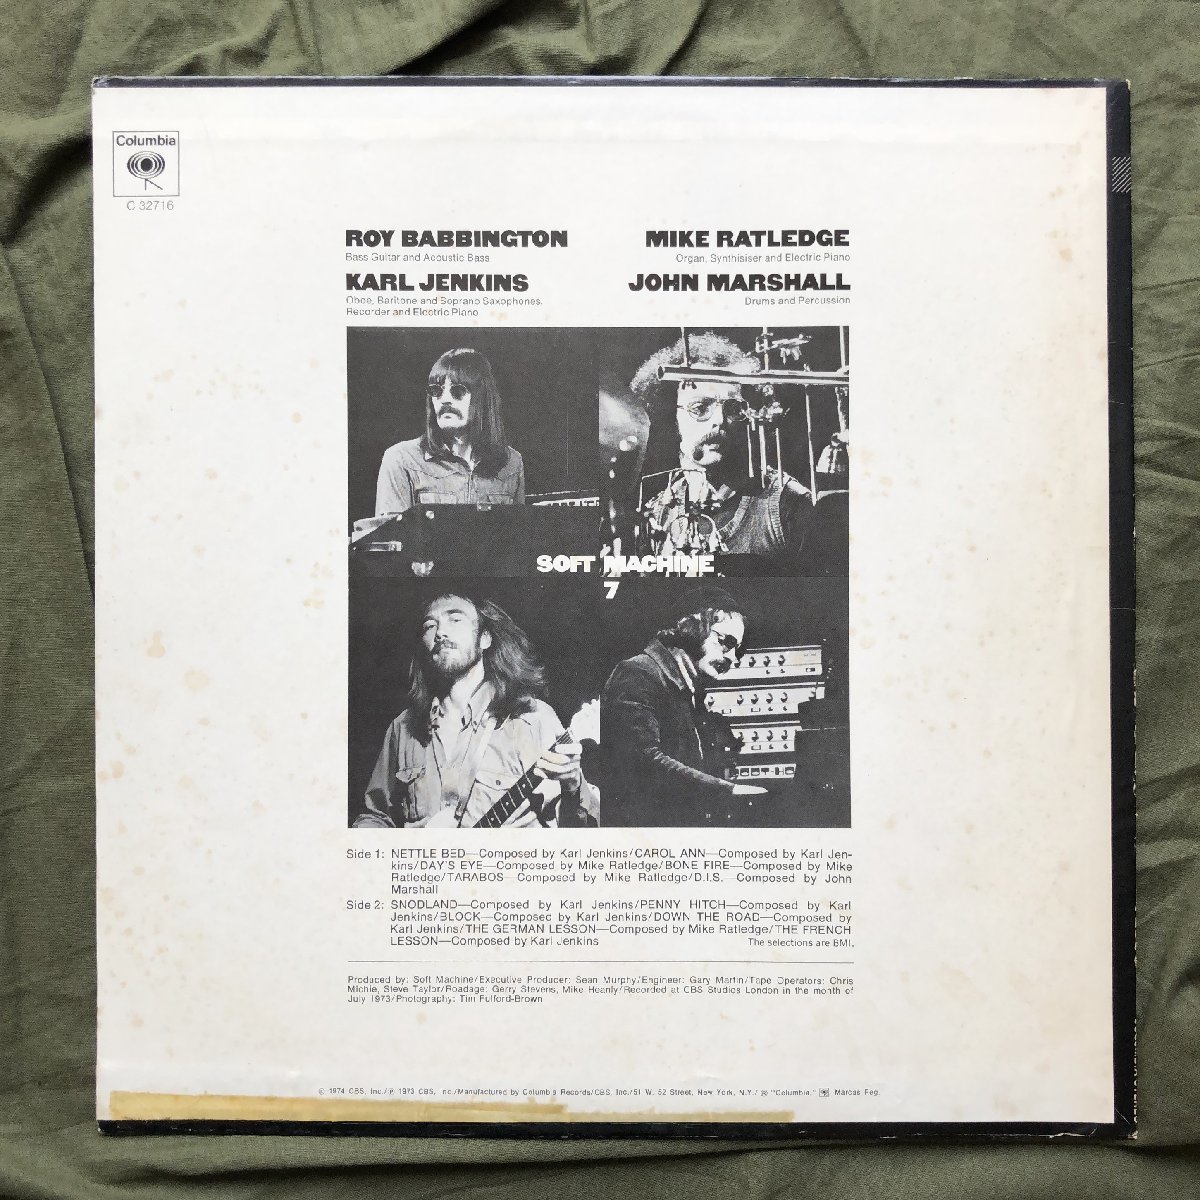 良盤 1974年 米国盤 ソフト・マシーン Soft Machine LPレコード セブン 7 Seven: Acid Fusion Rock_画像2